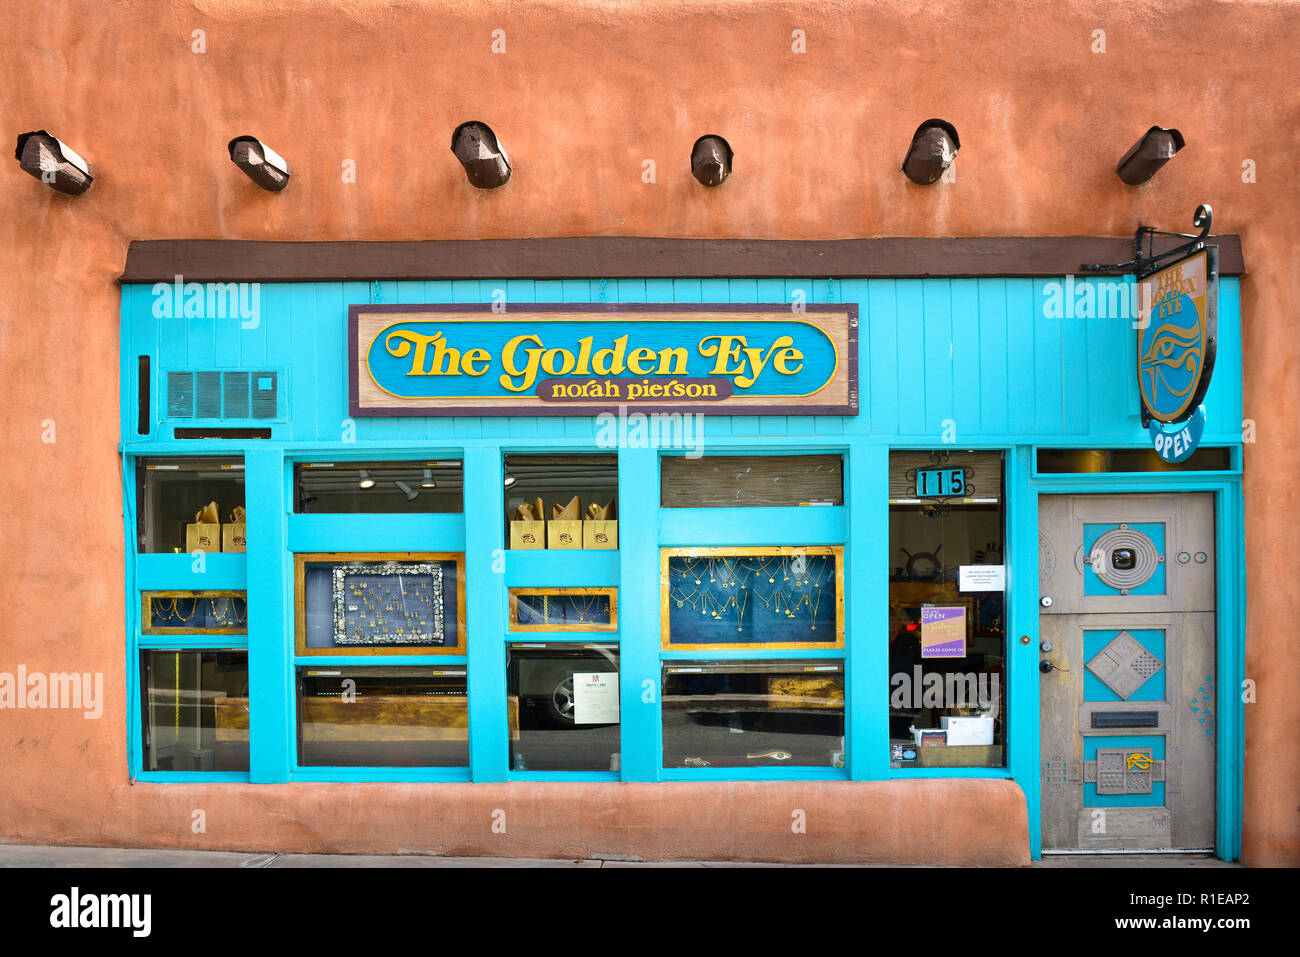 L'affascinante vecchio edificio di adobe con colore turchese storefront ospita il Golden Eye negozio Gioielli appena fuori da Plaza a Santa Fe, NM Foto Stock